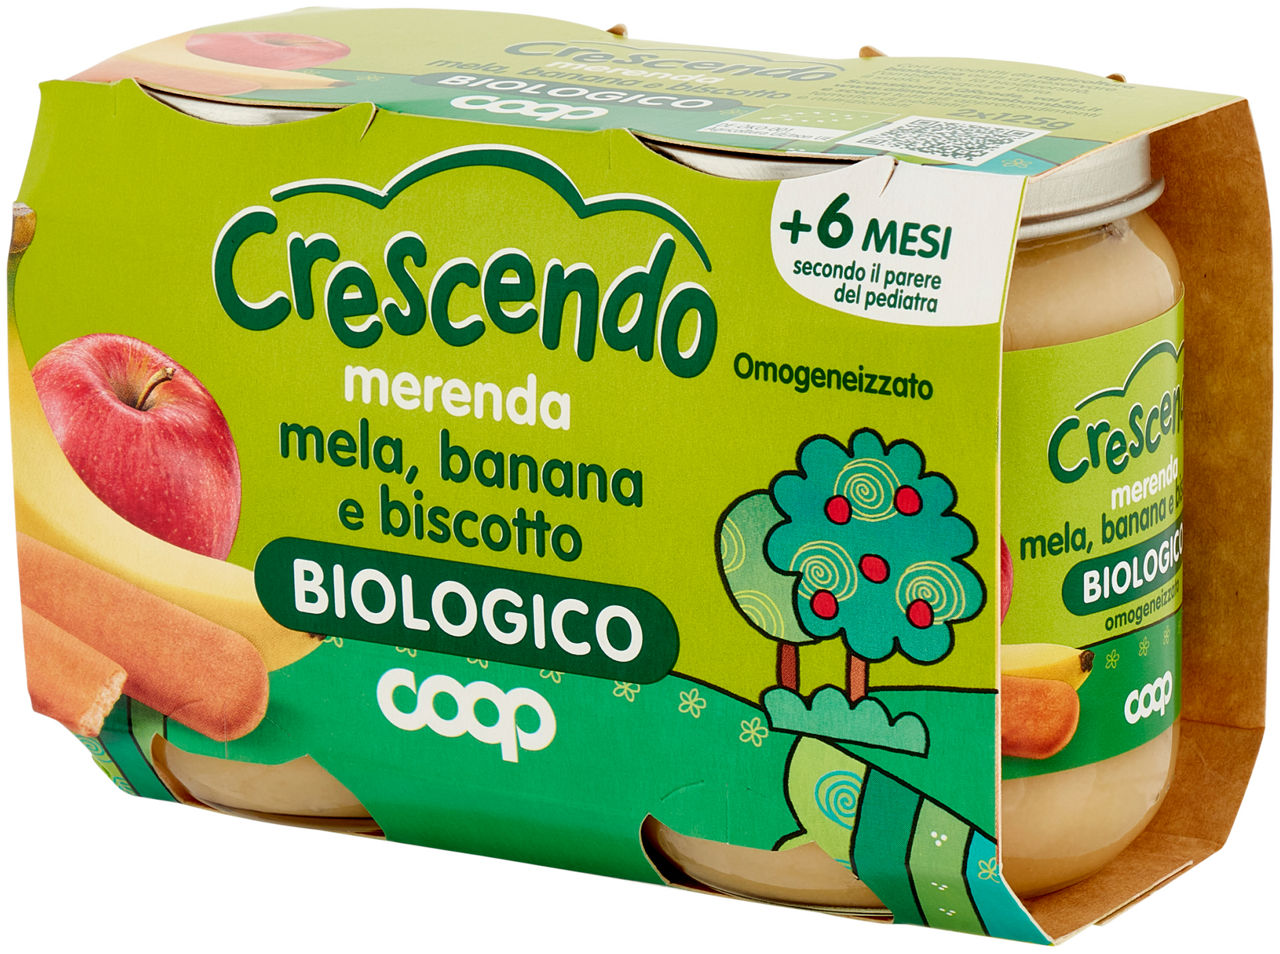 merenda mela, banana e biscotto omogeneizzato Biologico 2 x 125 g - Immagine 61